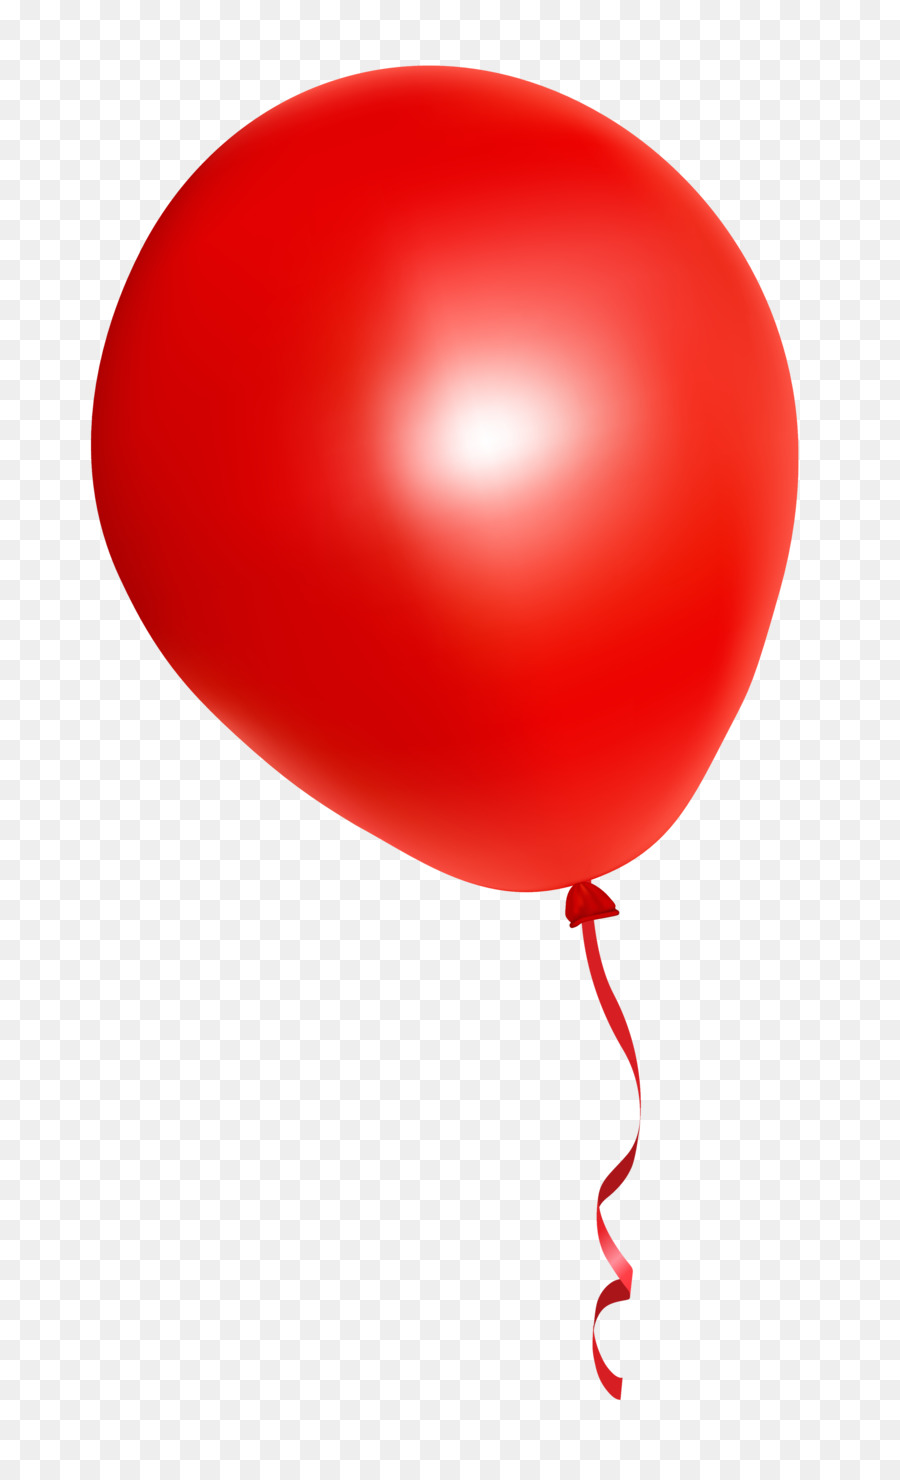  Balon Merah  Balon  Light gambar png